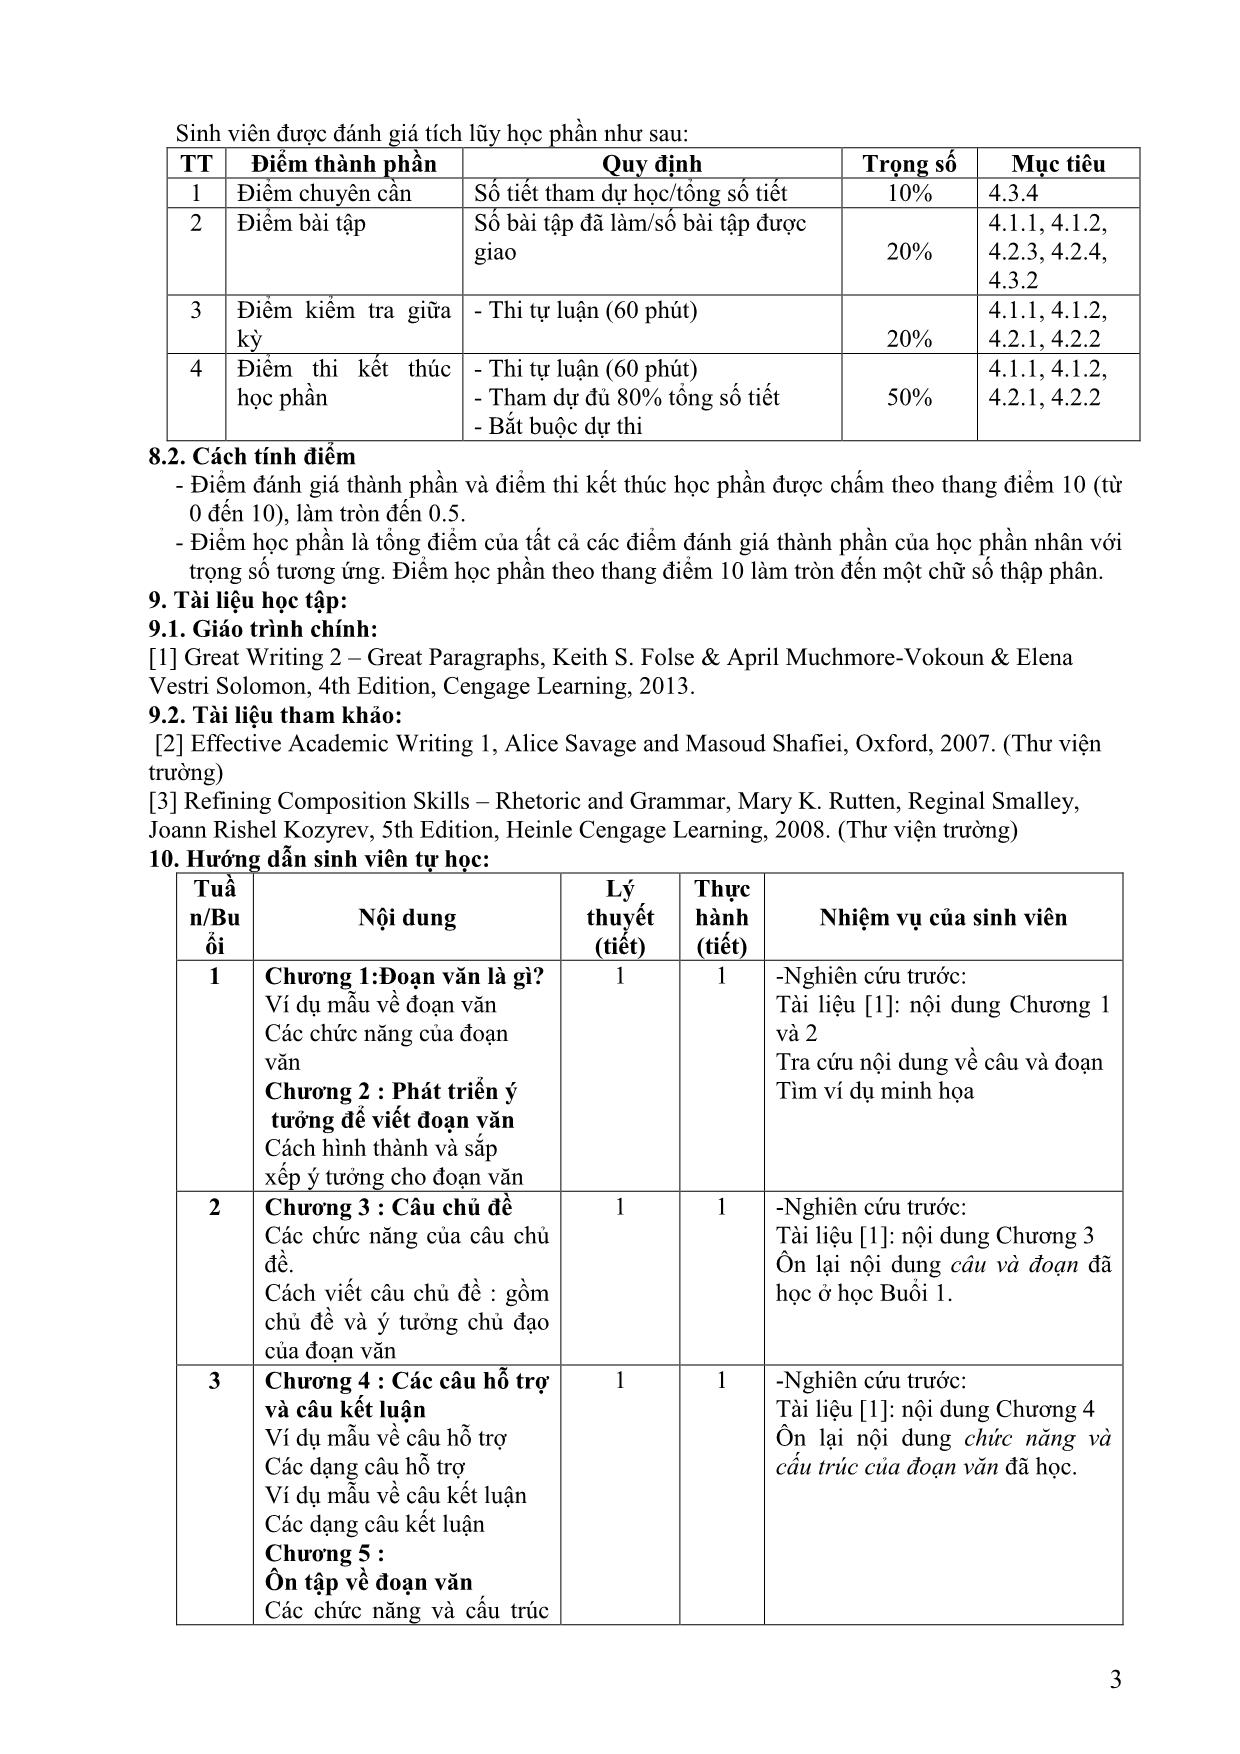 Đề cương học phần Viết tiếng Anh 2 (Writing 2) trang 3